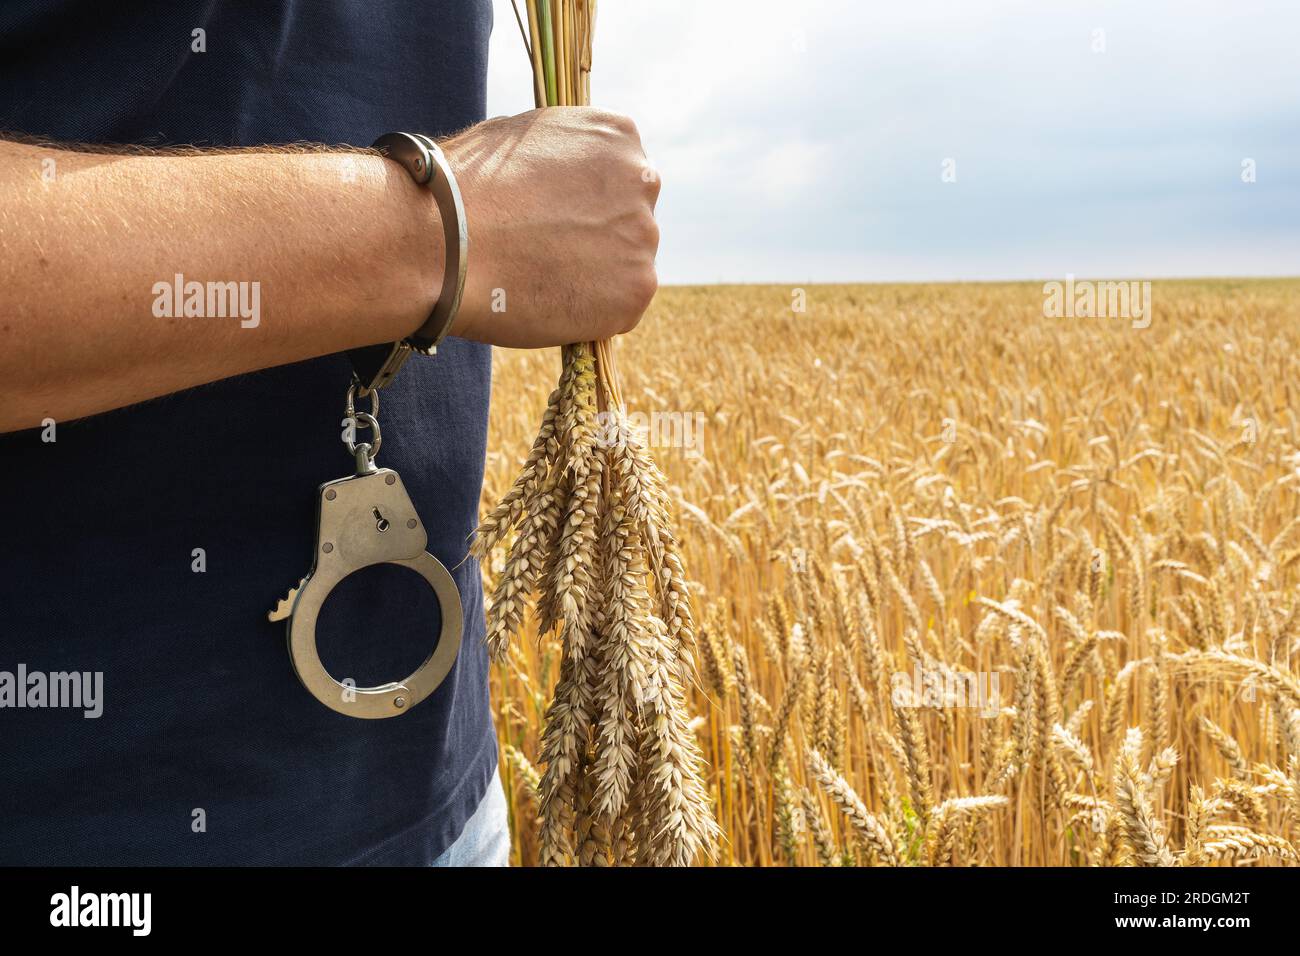 Handschellen an der Hand eines Mannes mit gerupften Stacheln Weizen, ein Konzept zum Thema Bestrafung für verdorbene Getreidepflanzen Stockfoto